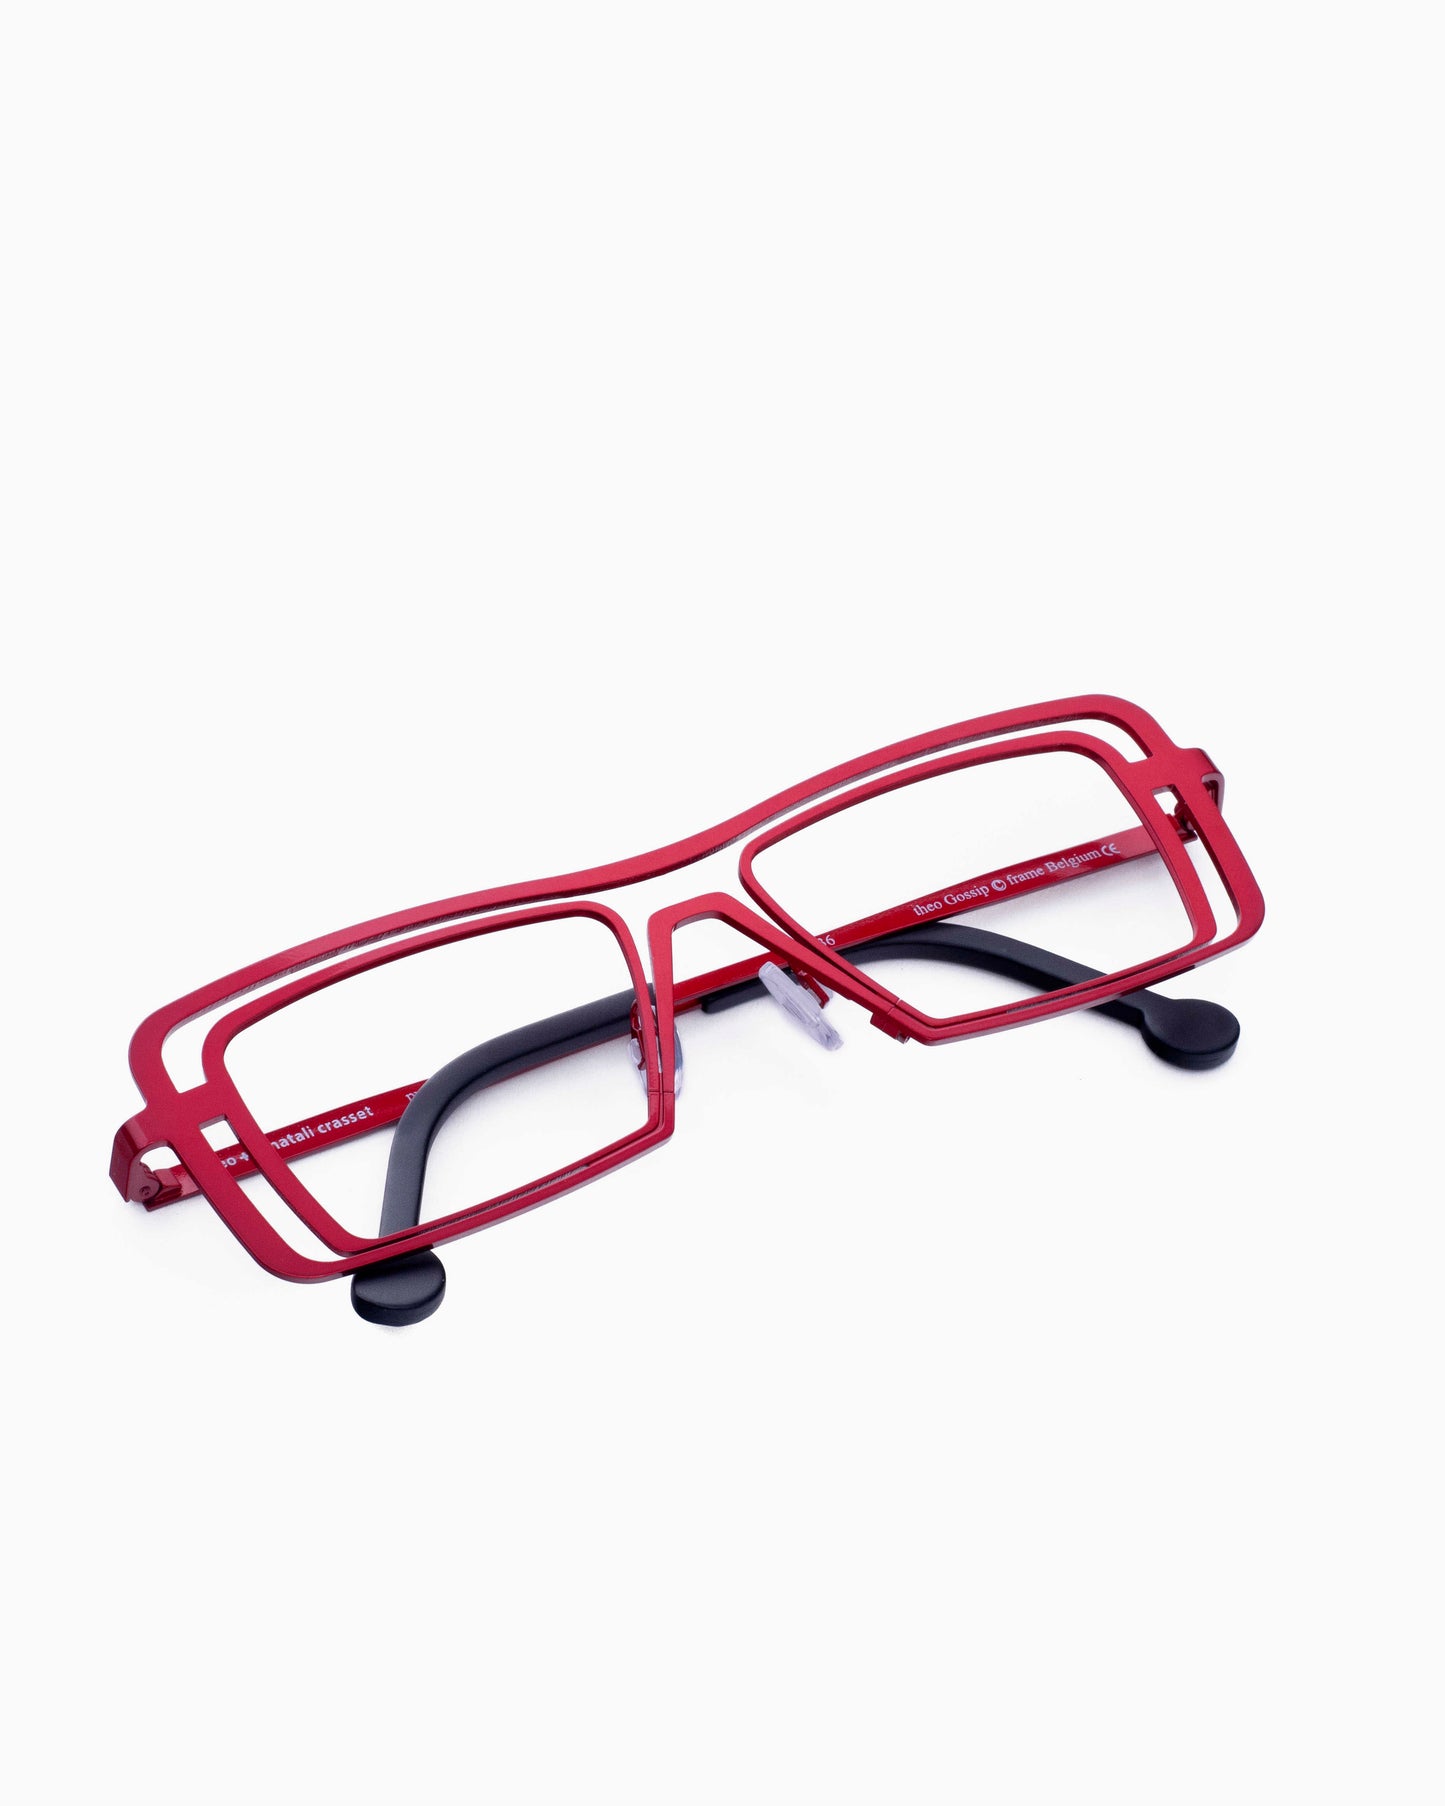 Theo - Gossip - 36 | glasses bar